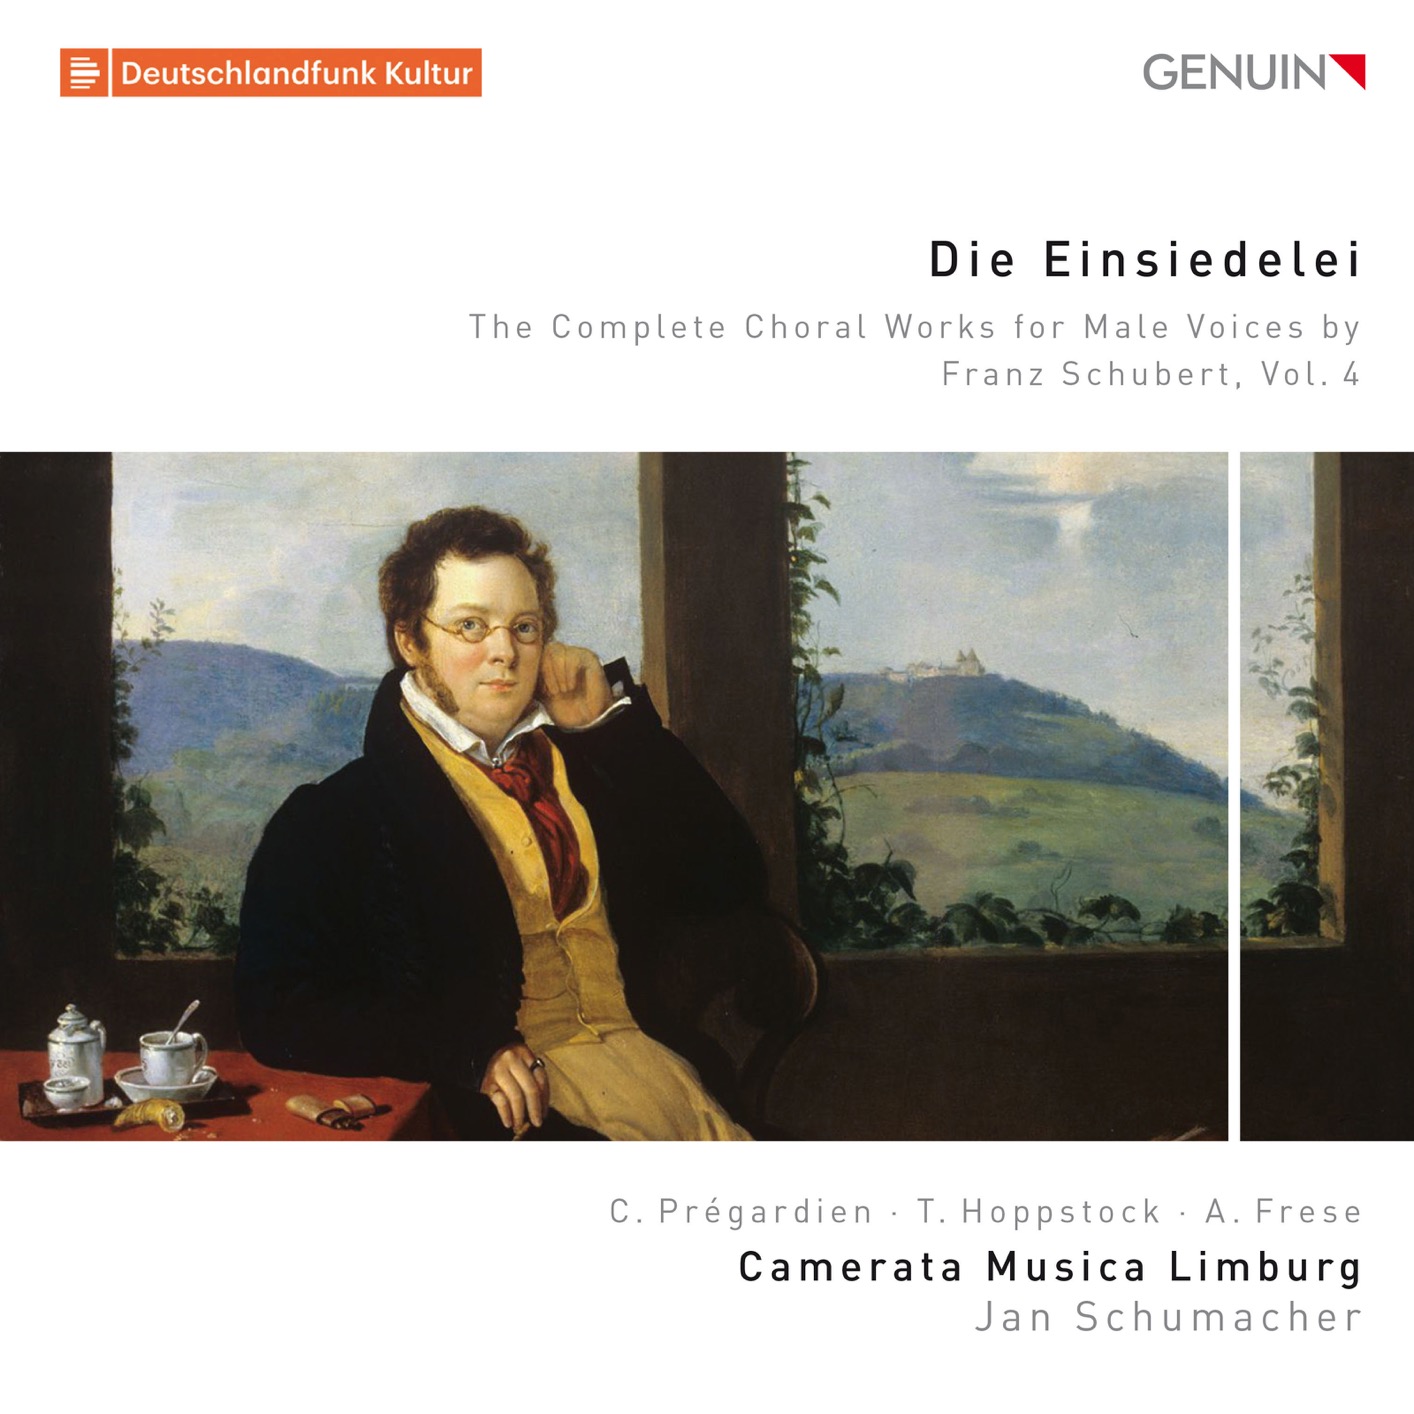 Camerata Musica Limburg – Die Einsiedelei: The Complete Choral Works for Male Voices by Franz Schubert, Vol. 4 (2018) [FLAC 24bit/96kHz]